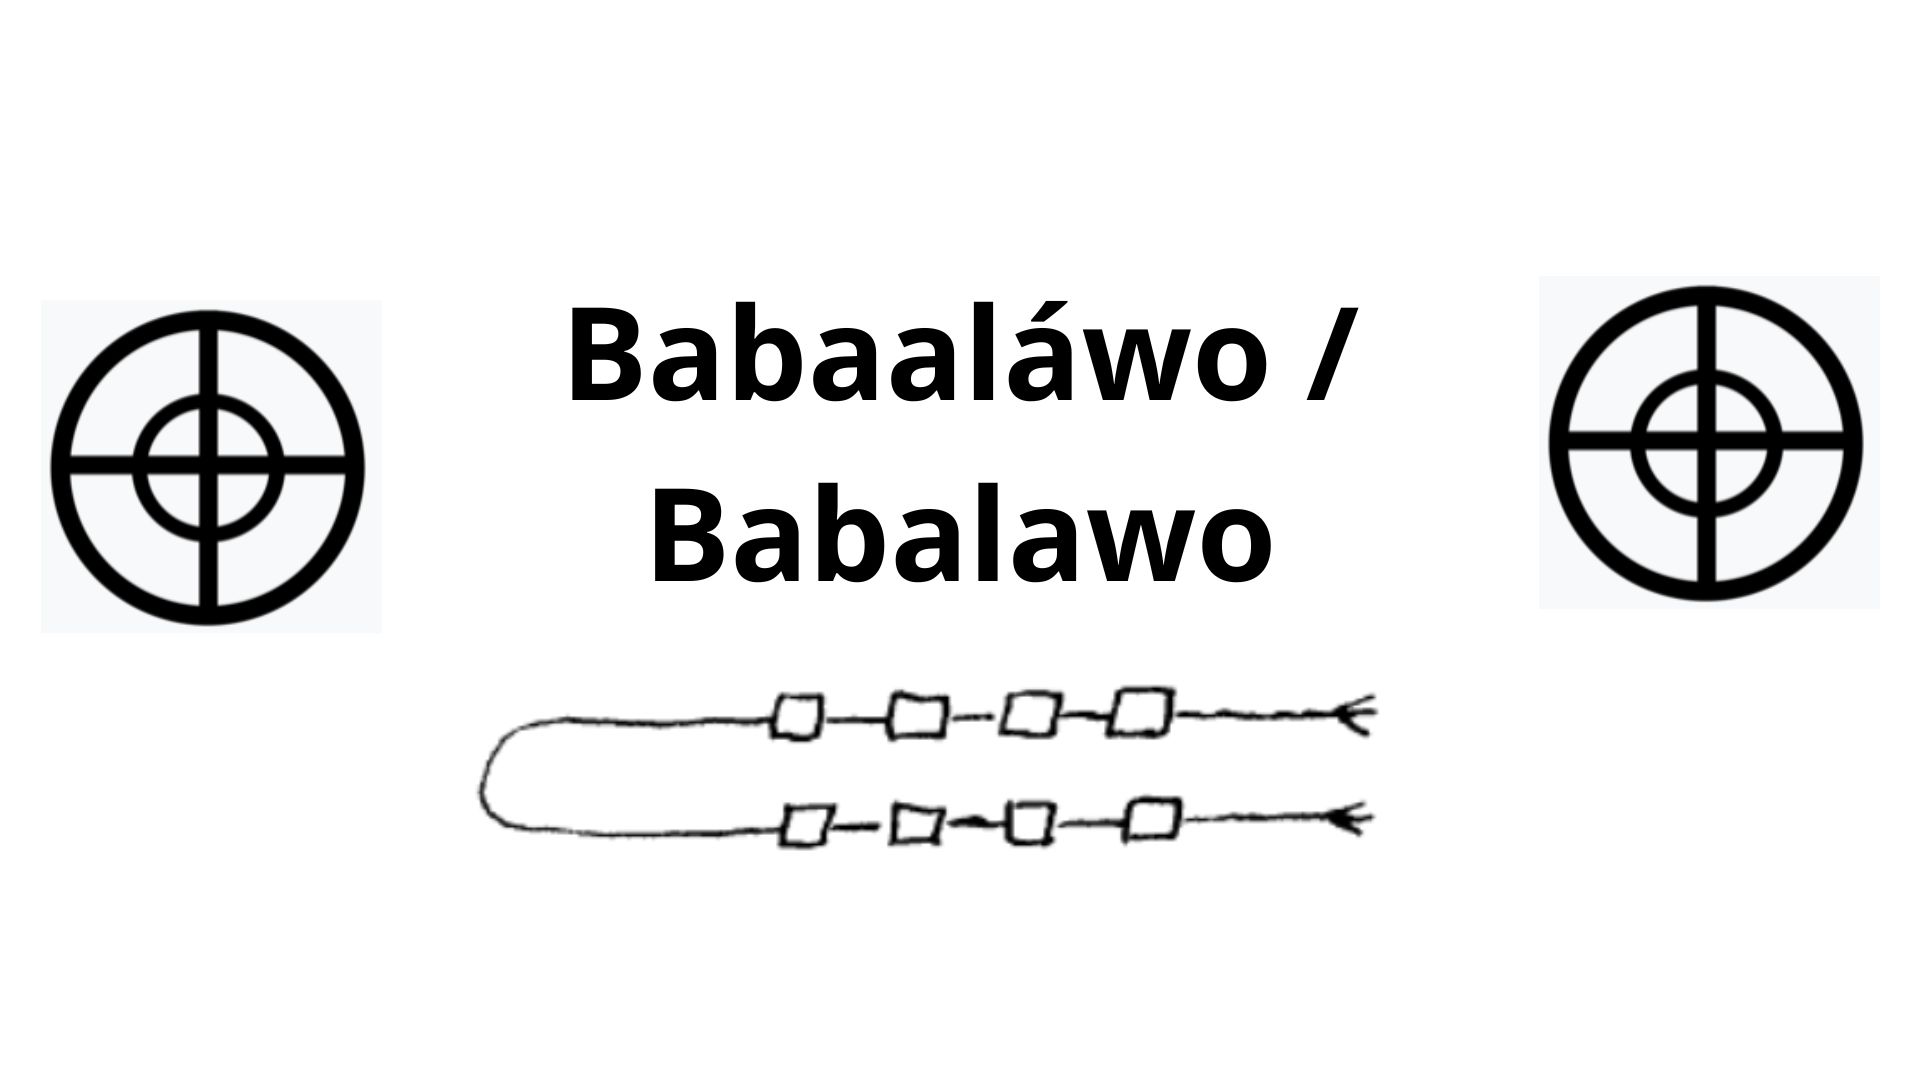 Babalawo